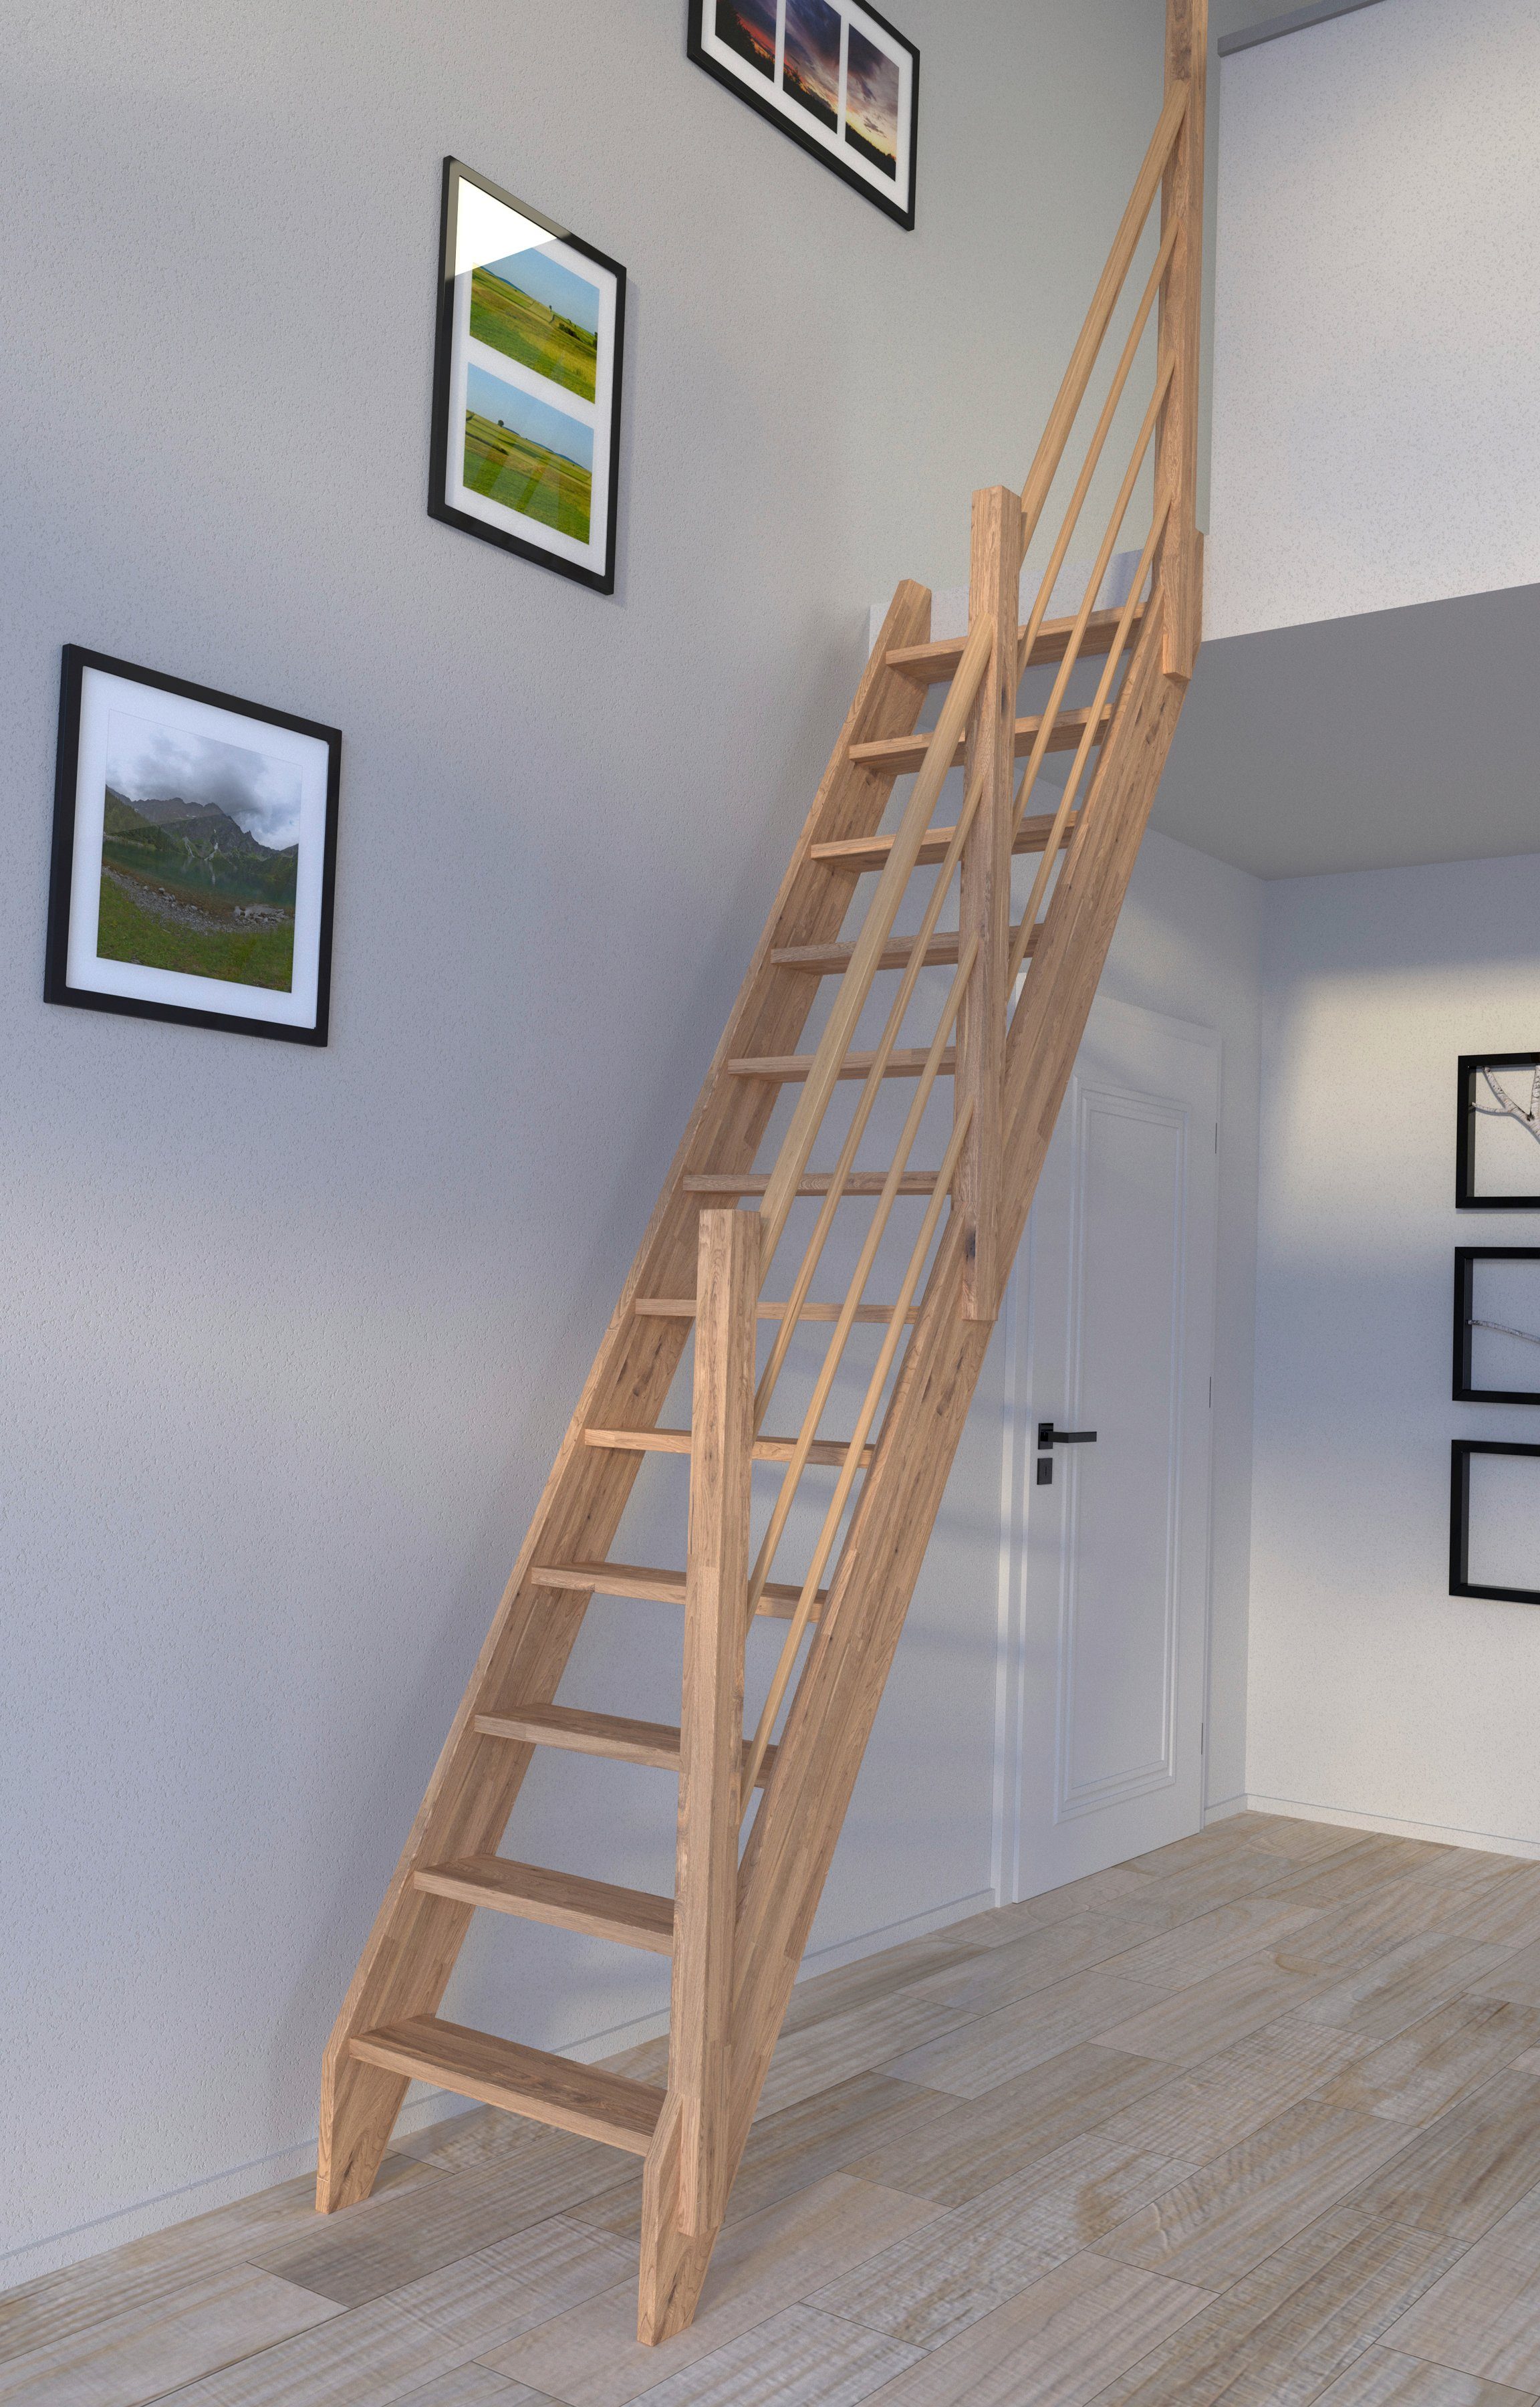 Holz-Holz Design Raumspartreppe Starwood 3000, Durchgehende Stufen Rechts, offen, Geländer Wangenteile Eiche